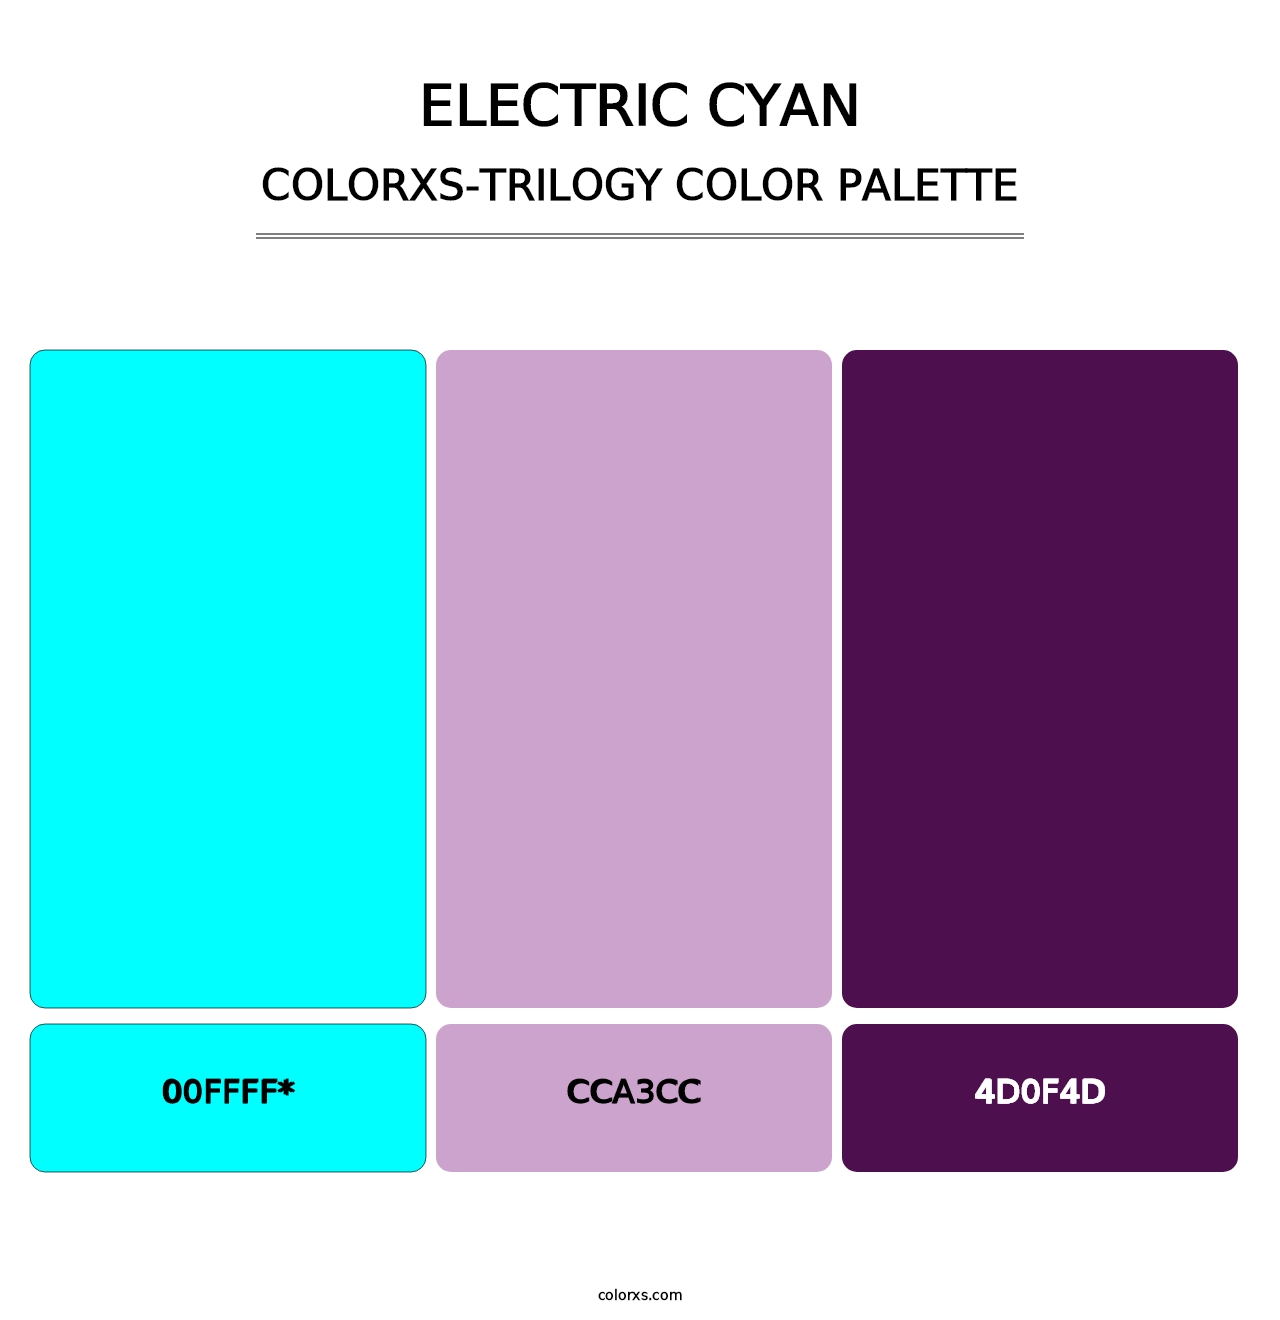 Electric Cyan - Colorxs Trilogy Palette